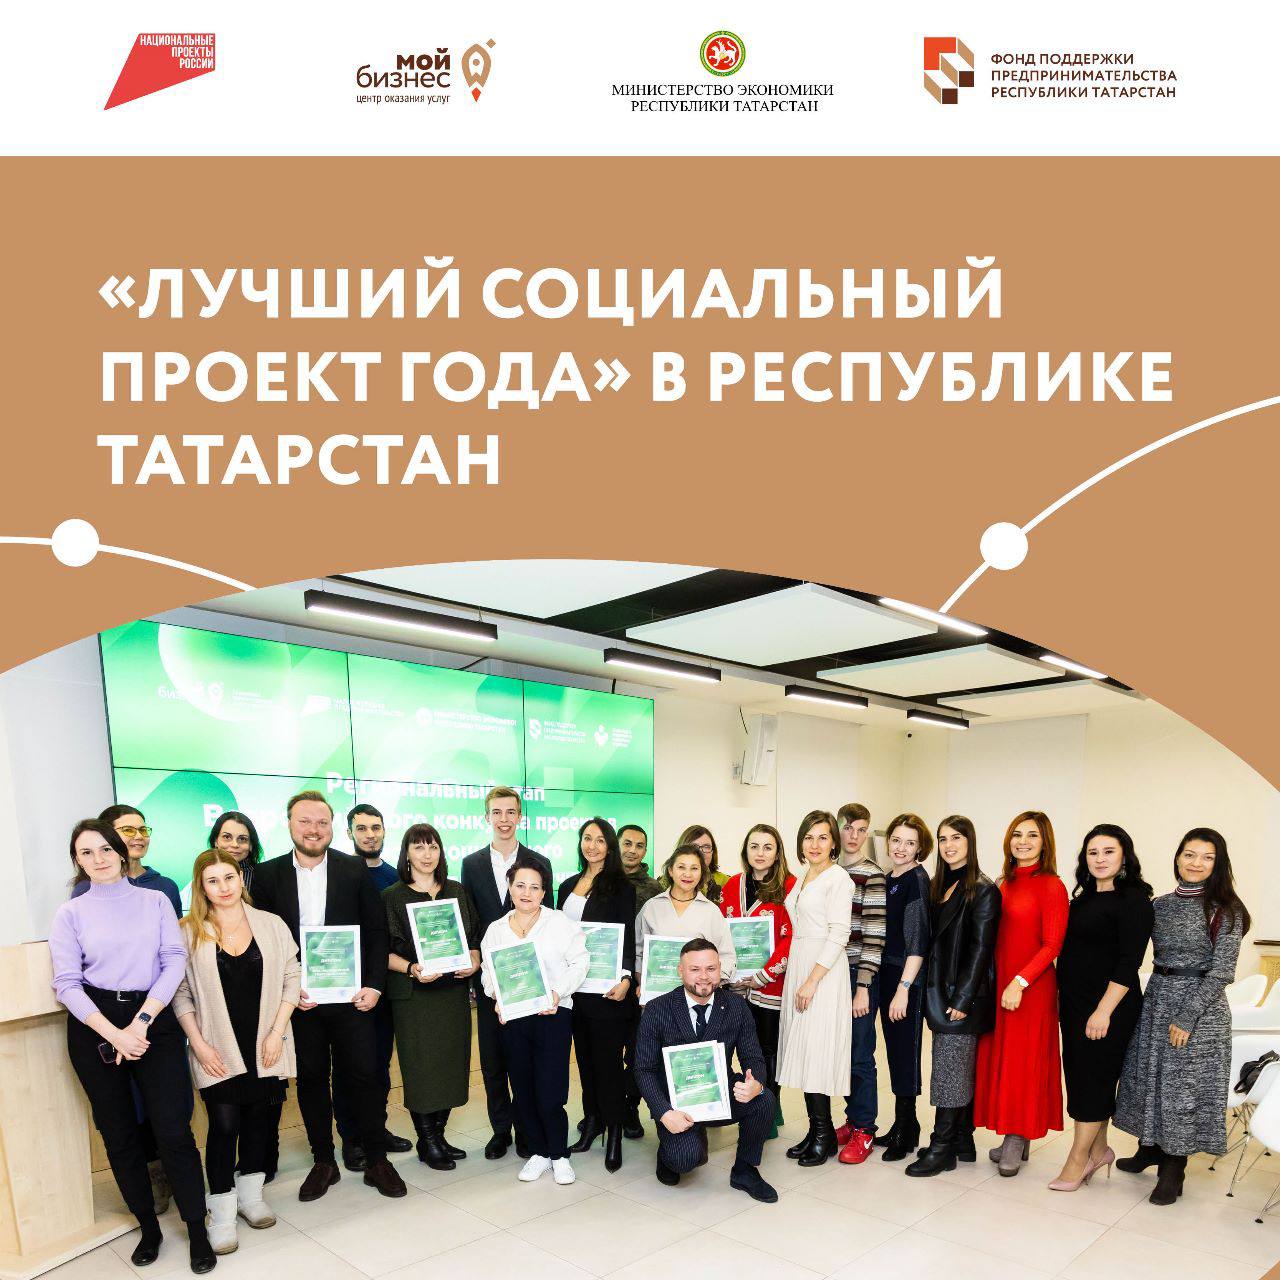 В Татарстане выбрали «Лучший социальный проект года». Церемония награждения призёров Всероссийского конкурса состоялась в Доме предпринимателя.